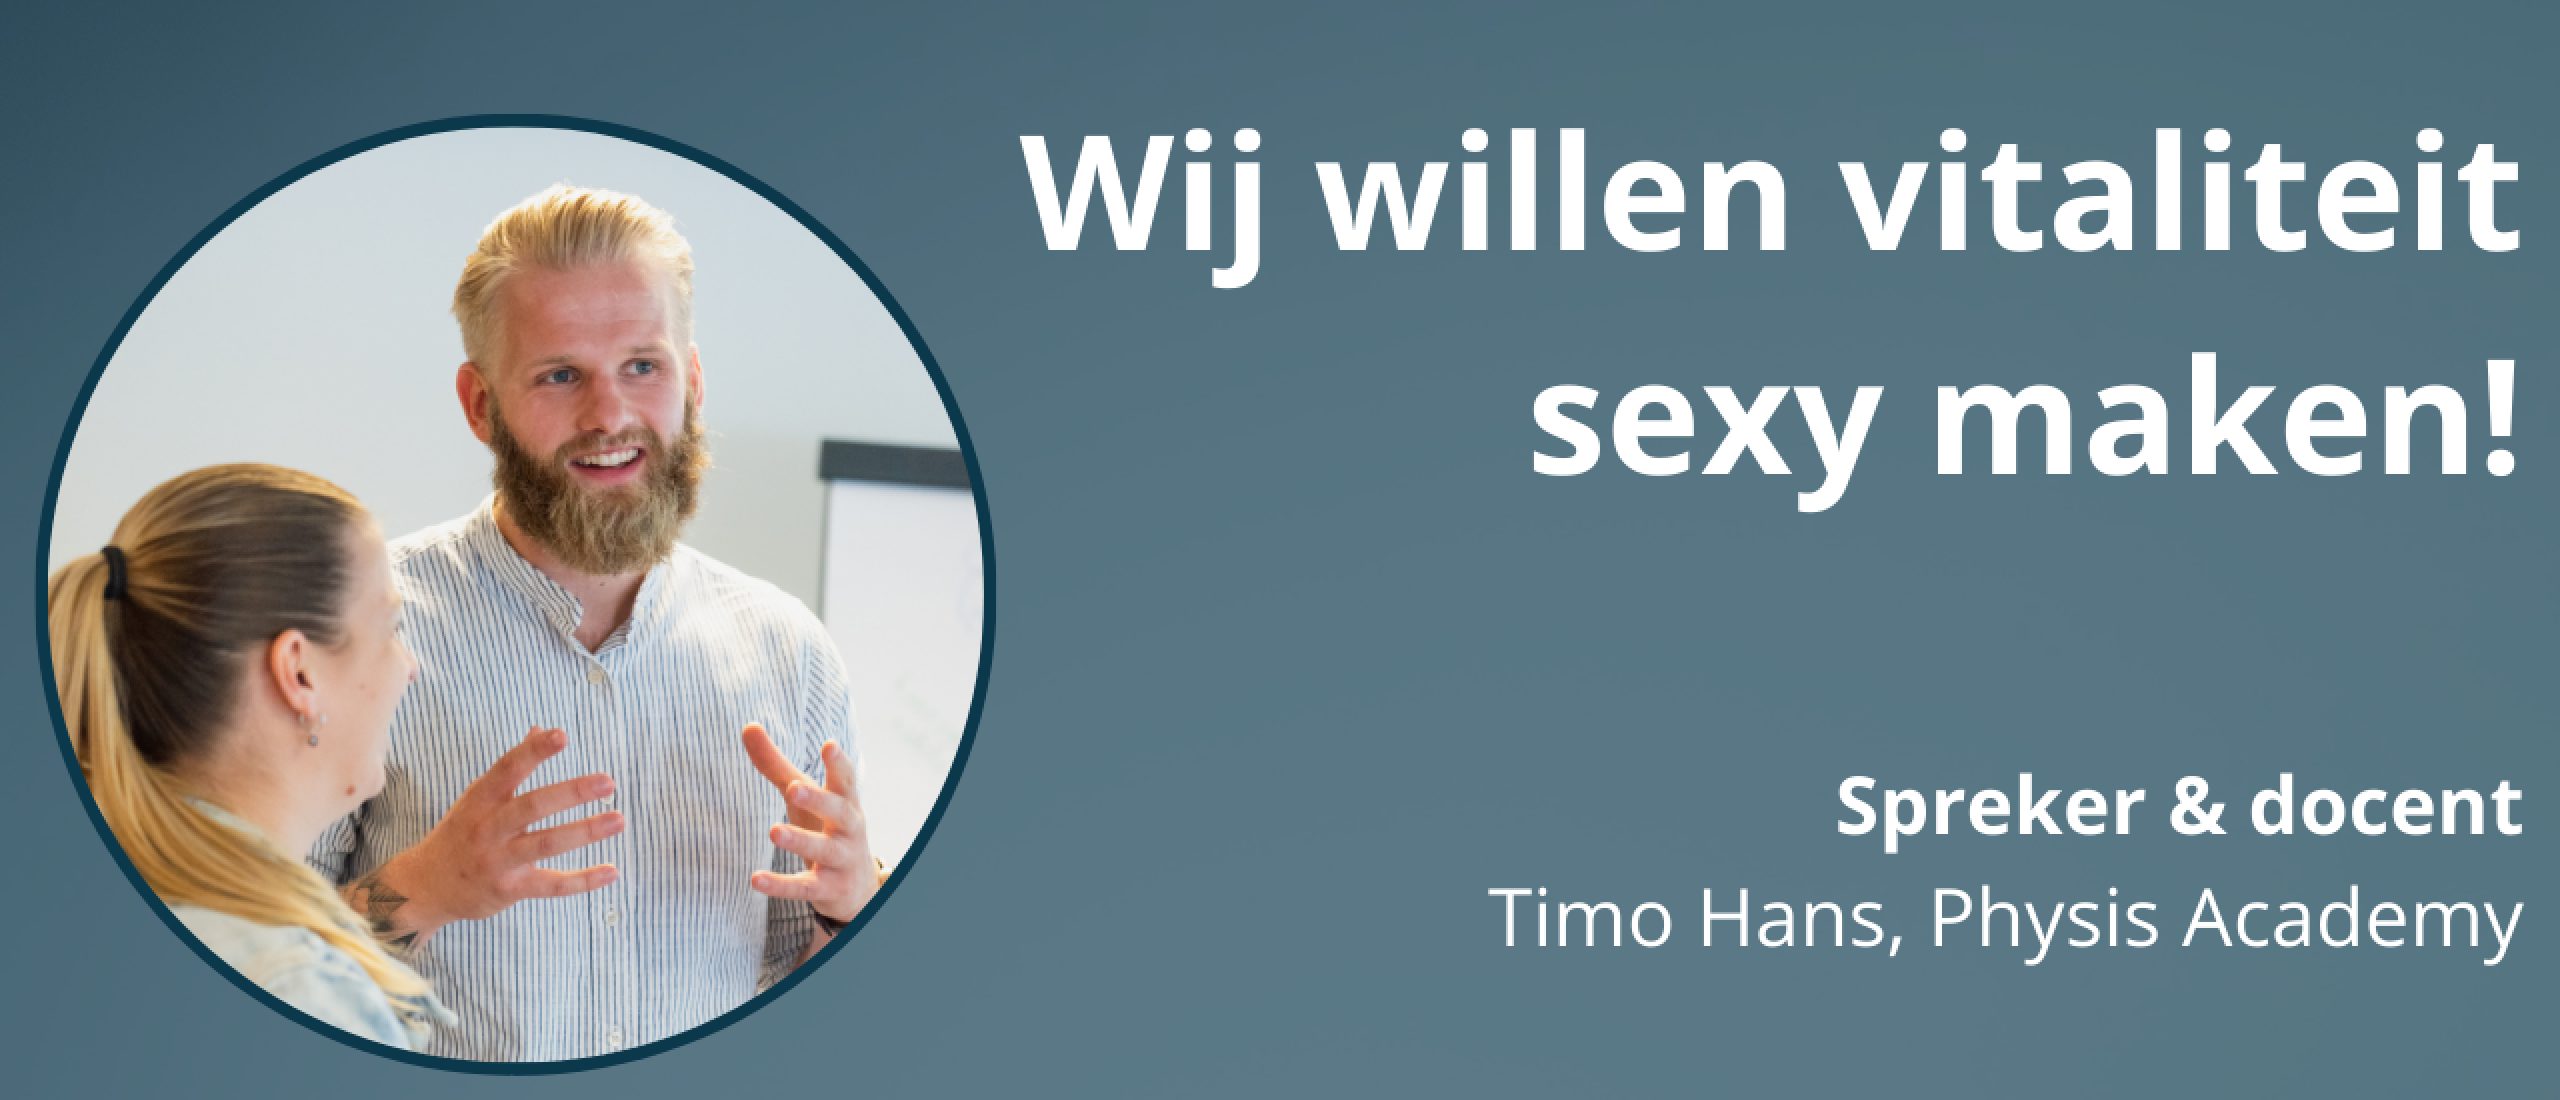 Wij willen vitaliteit sexy maken - Timo Hans, Physis academy